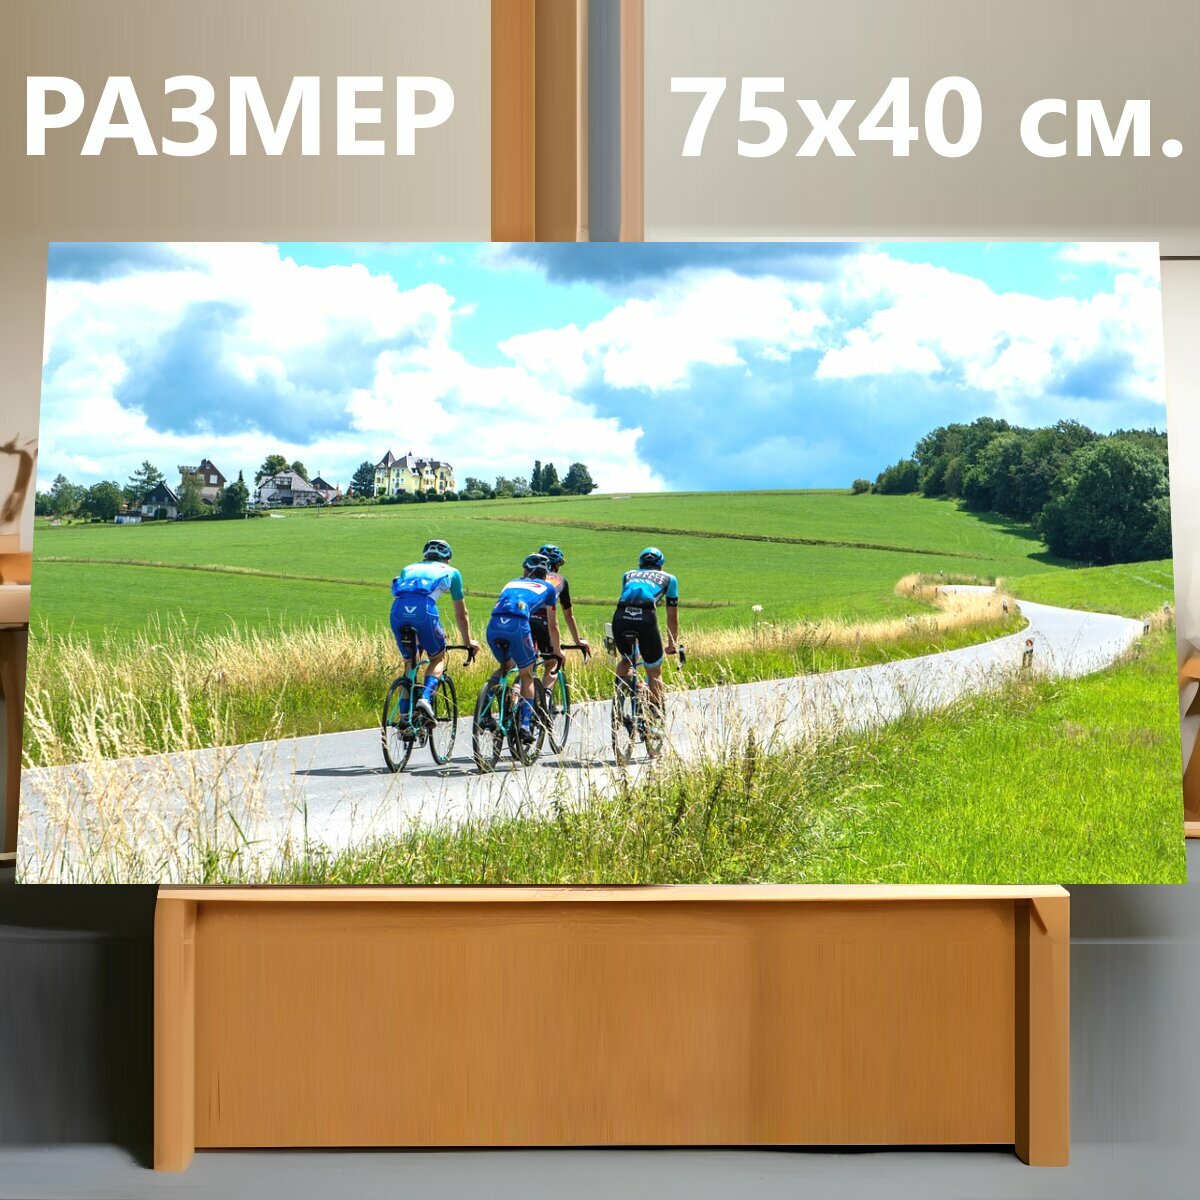 Картина на холсте "Кататься на велосипеде, велосипедисты, спорт" на подрамнике 75х40 см. для интерьера